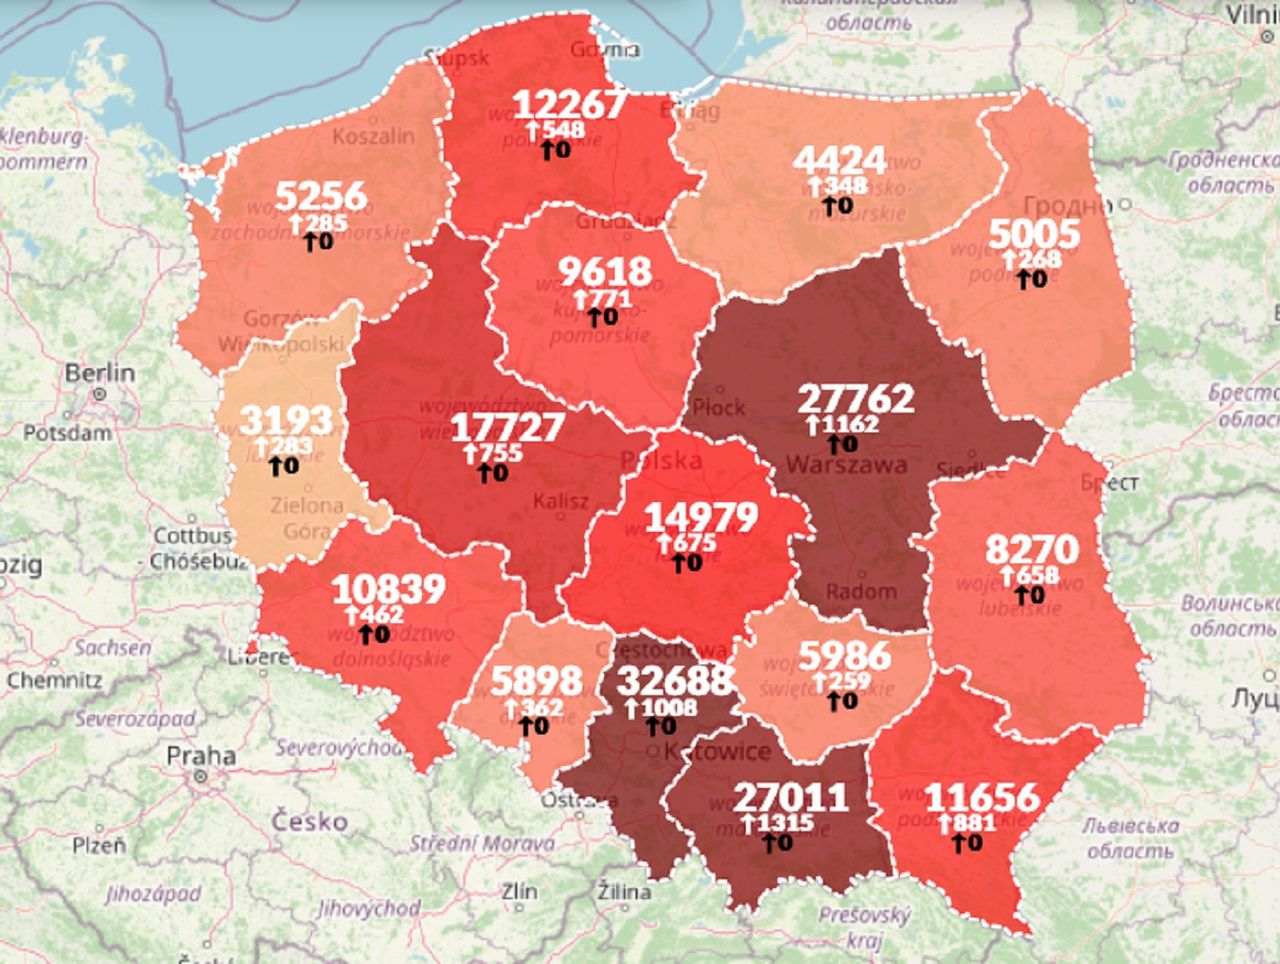 Koronawirus w Polsce. Rekord zakażeń. Ponad 10 tysięcy nowych przypadków COVID-19